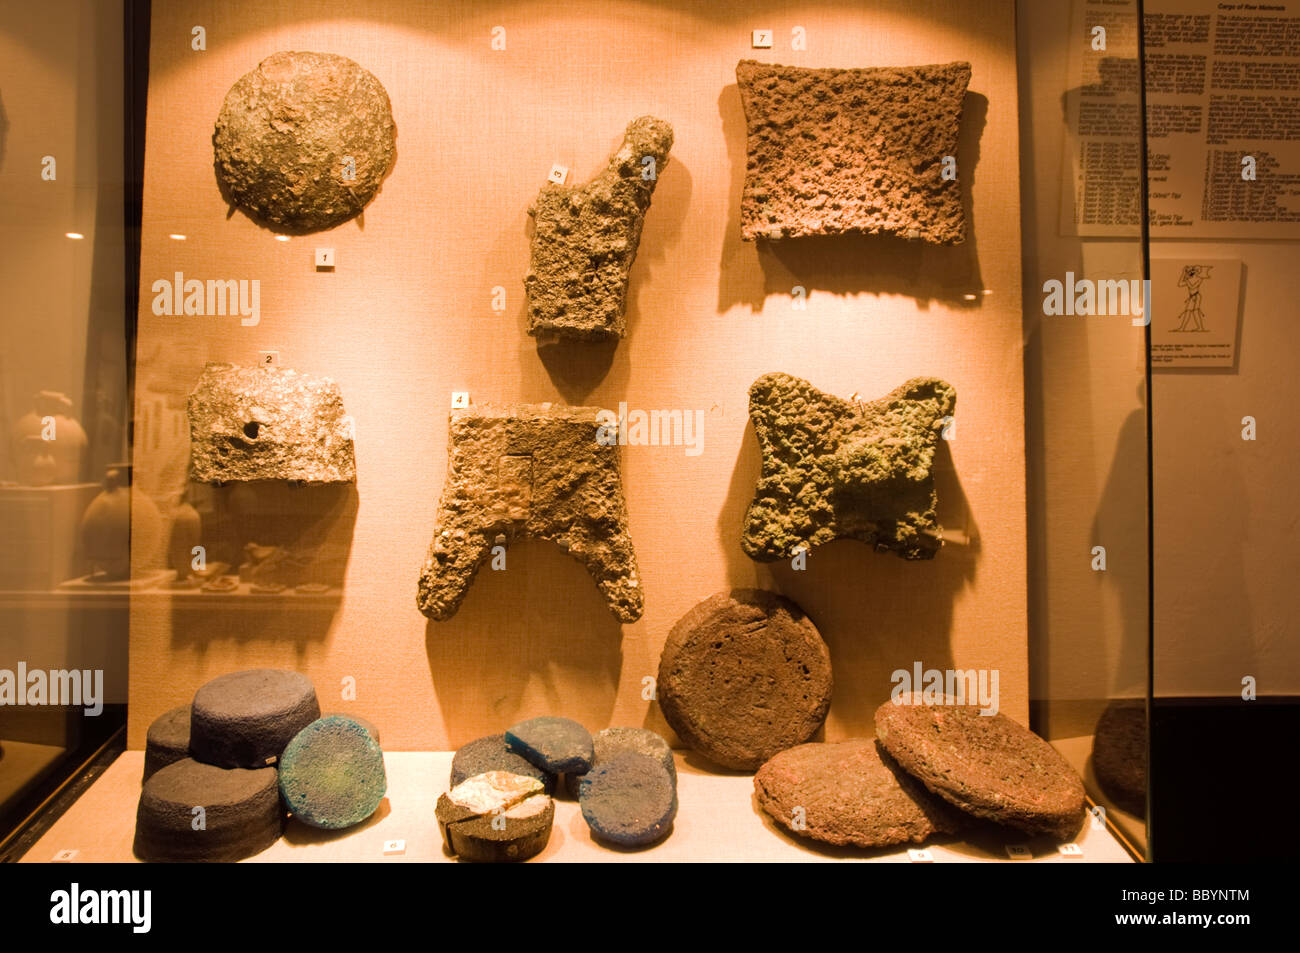 Lingots Dans Bronz Uluburun, épaves de l'époque plus ancienne épave jamais trouvé, Musée d'archéologie sous-marine de Bodrum Turquie Banque D'Images